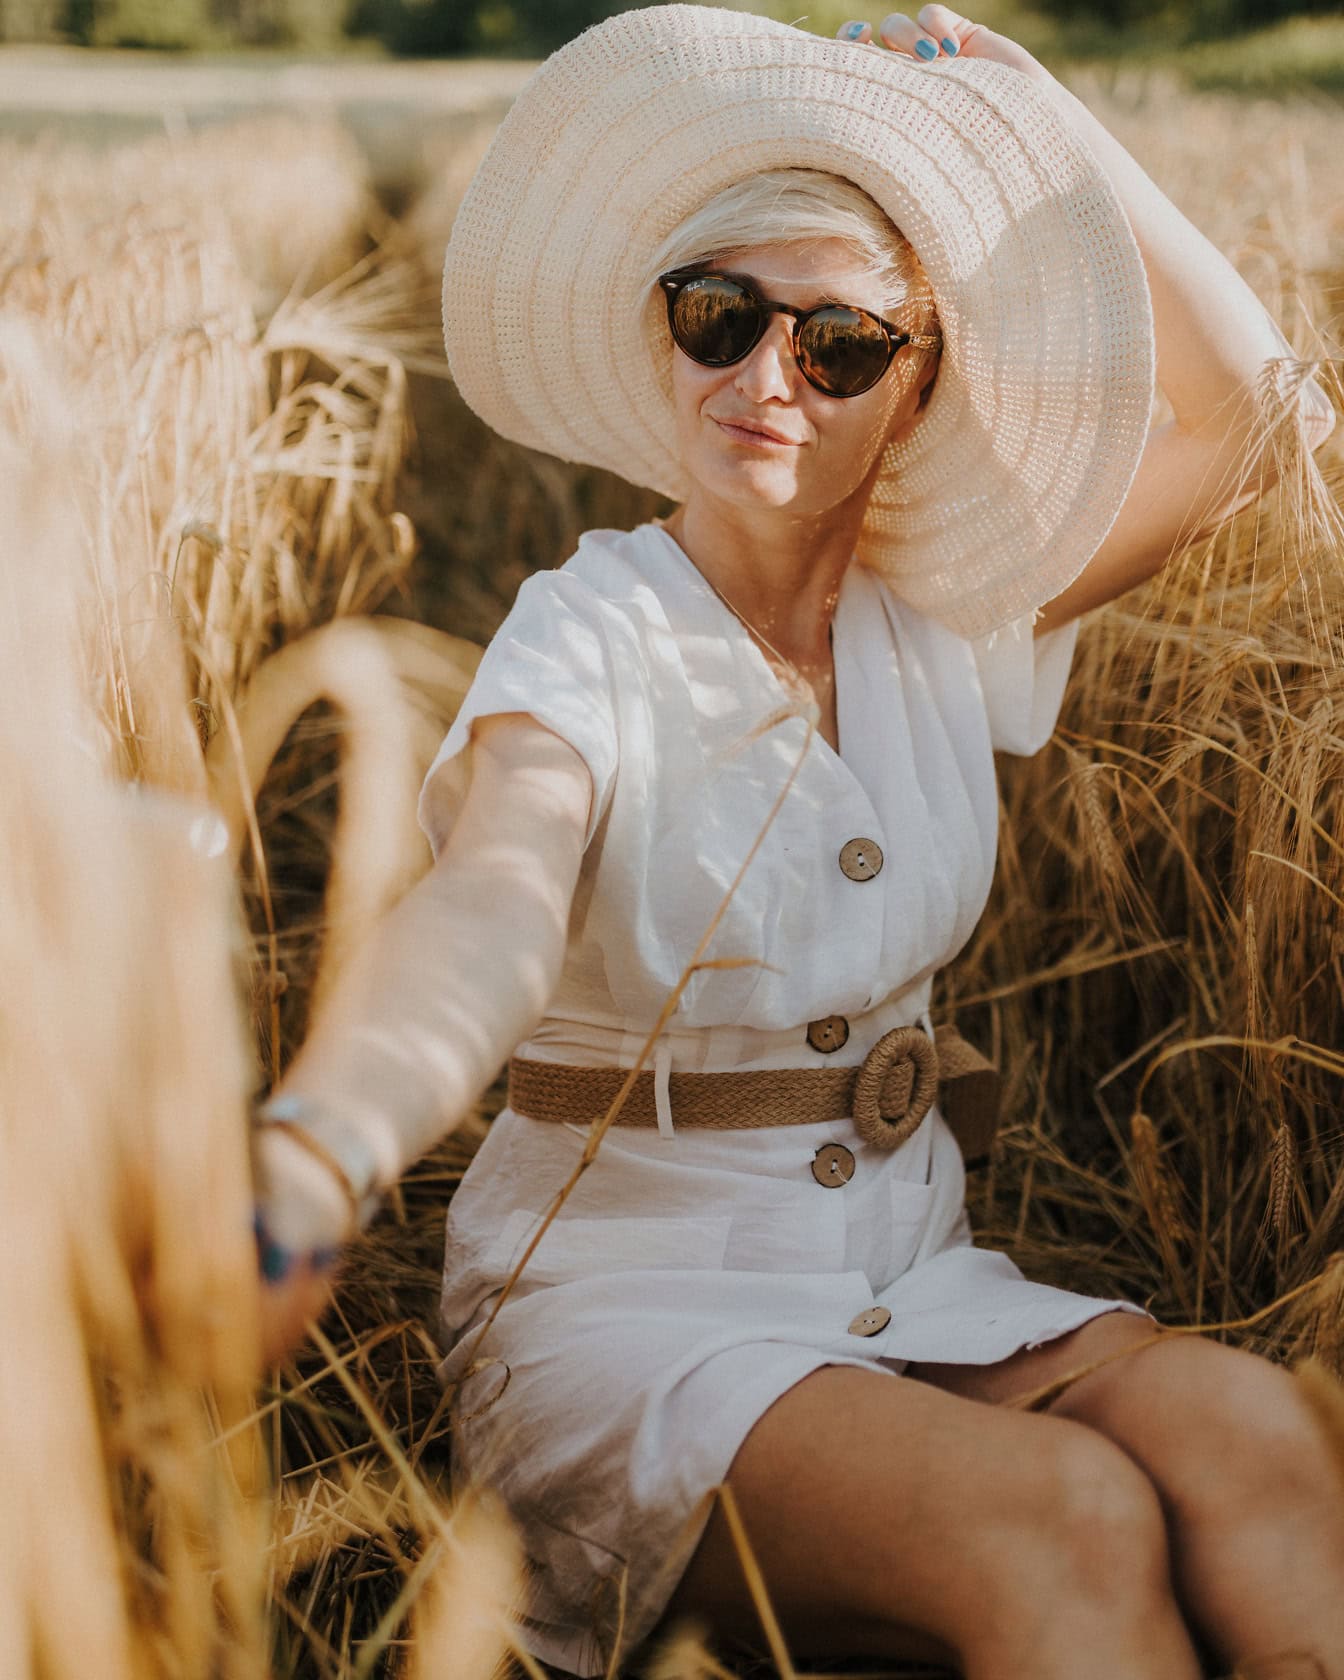 Csinos csillogó szőke hölgy kalapban és napszemüvegben napozik egy búzamezőn nyár végén